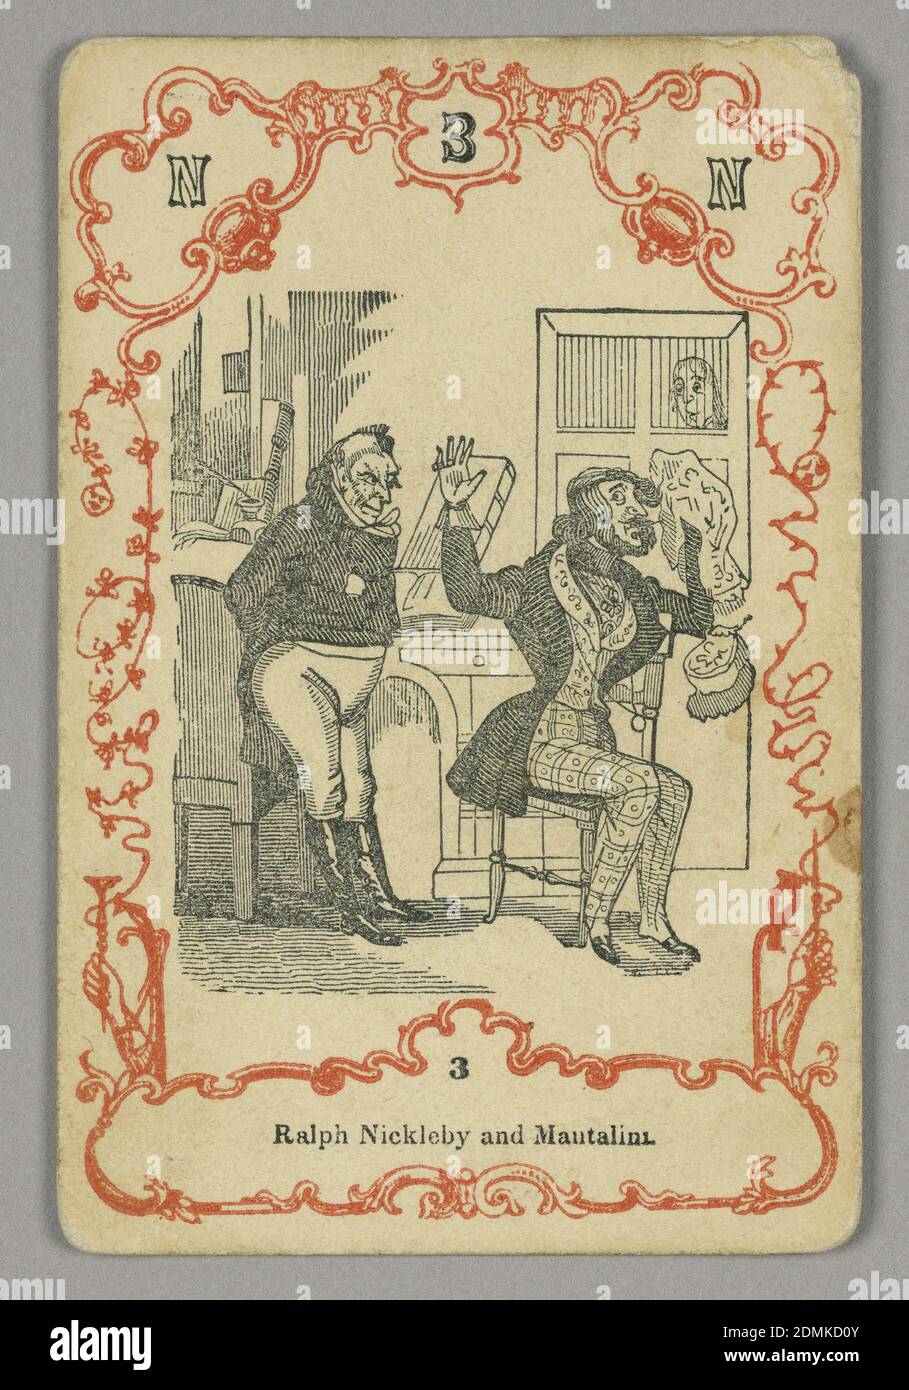 Jugar a la carta, tinta roja y negra, papel, en la parte superior: P 1 C; debajo de la imagen central: 4, Europa, ca. 1855, jugando a la carta Foto de stock